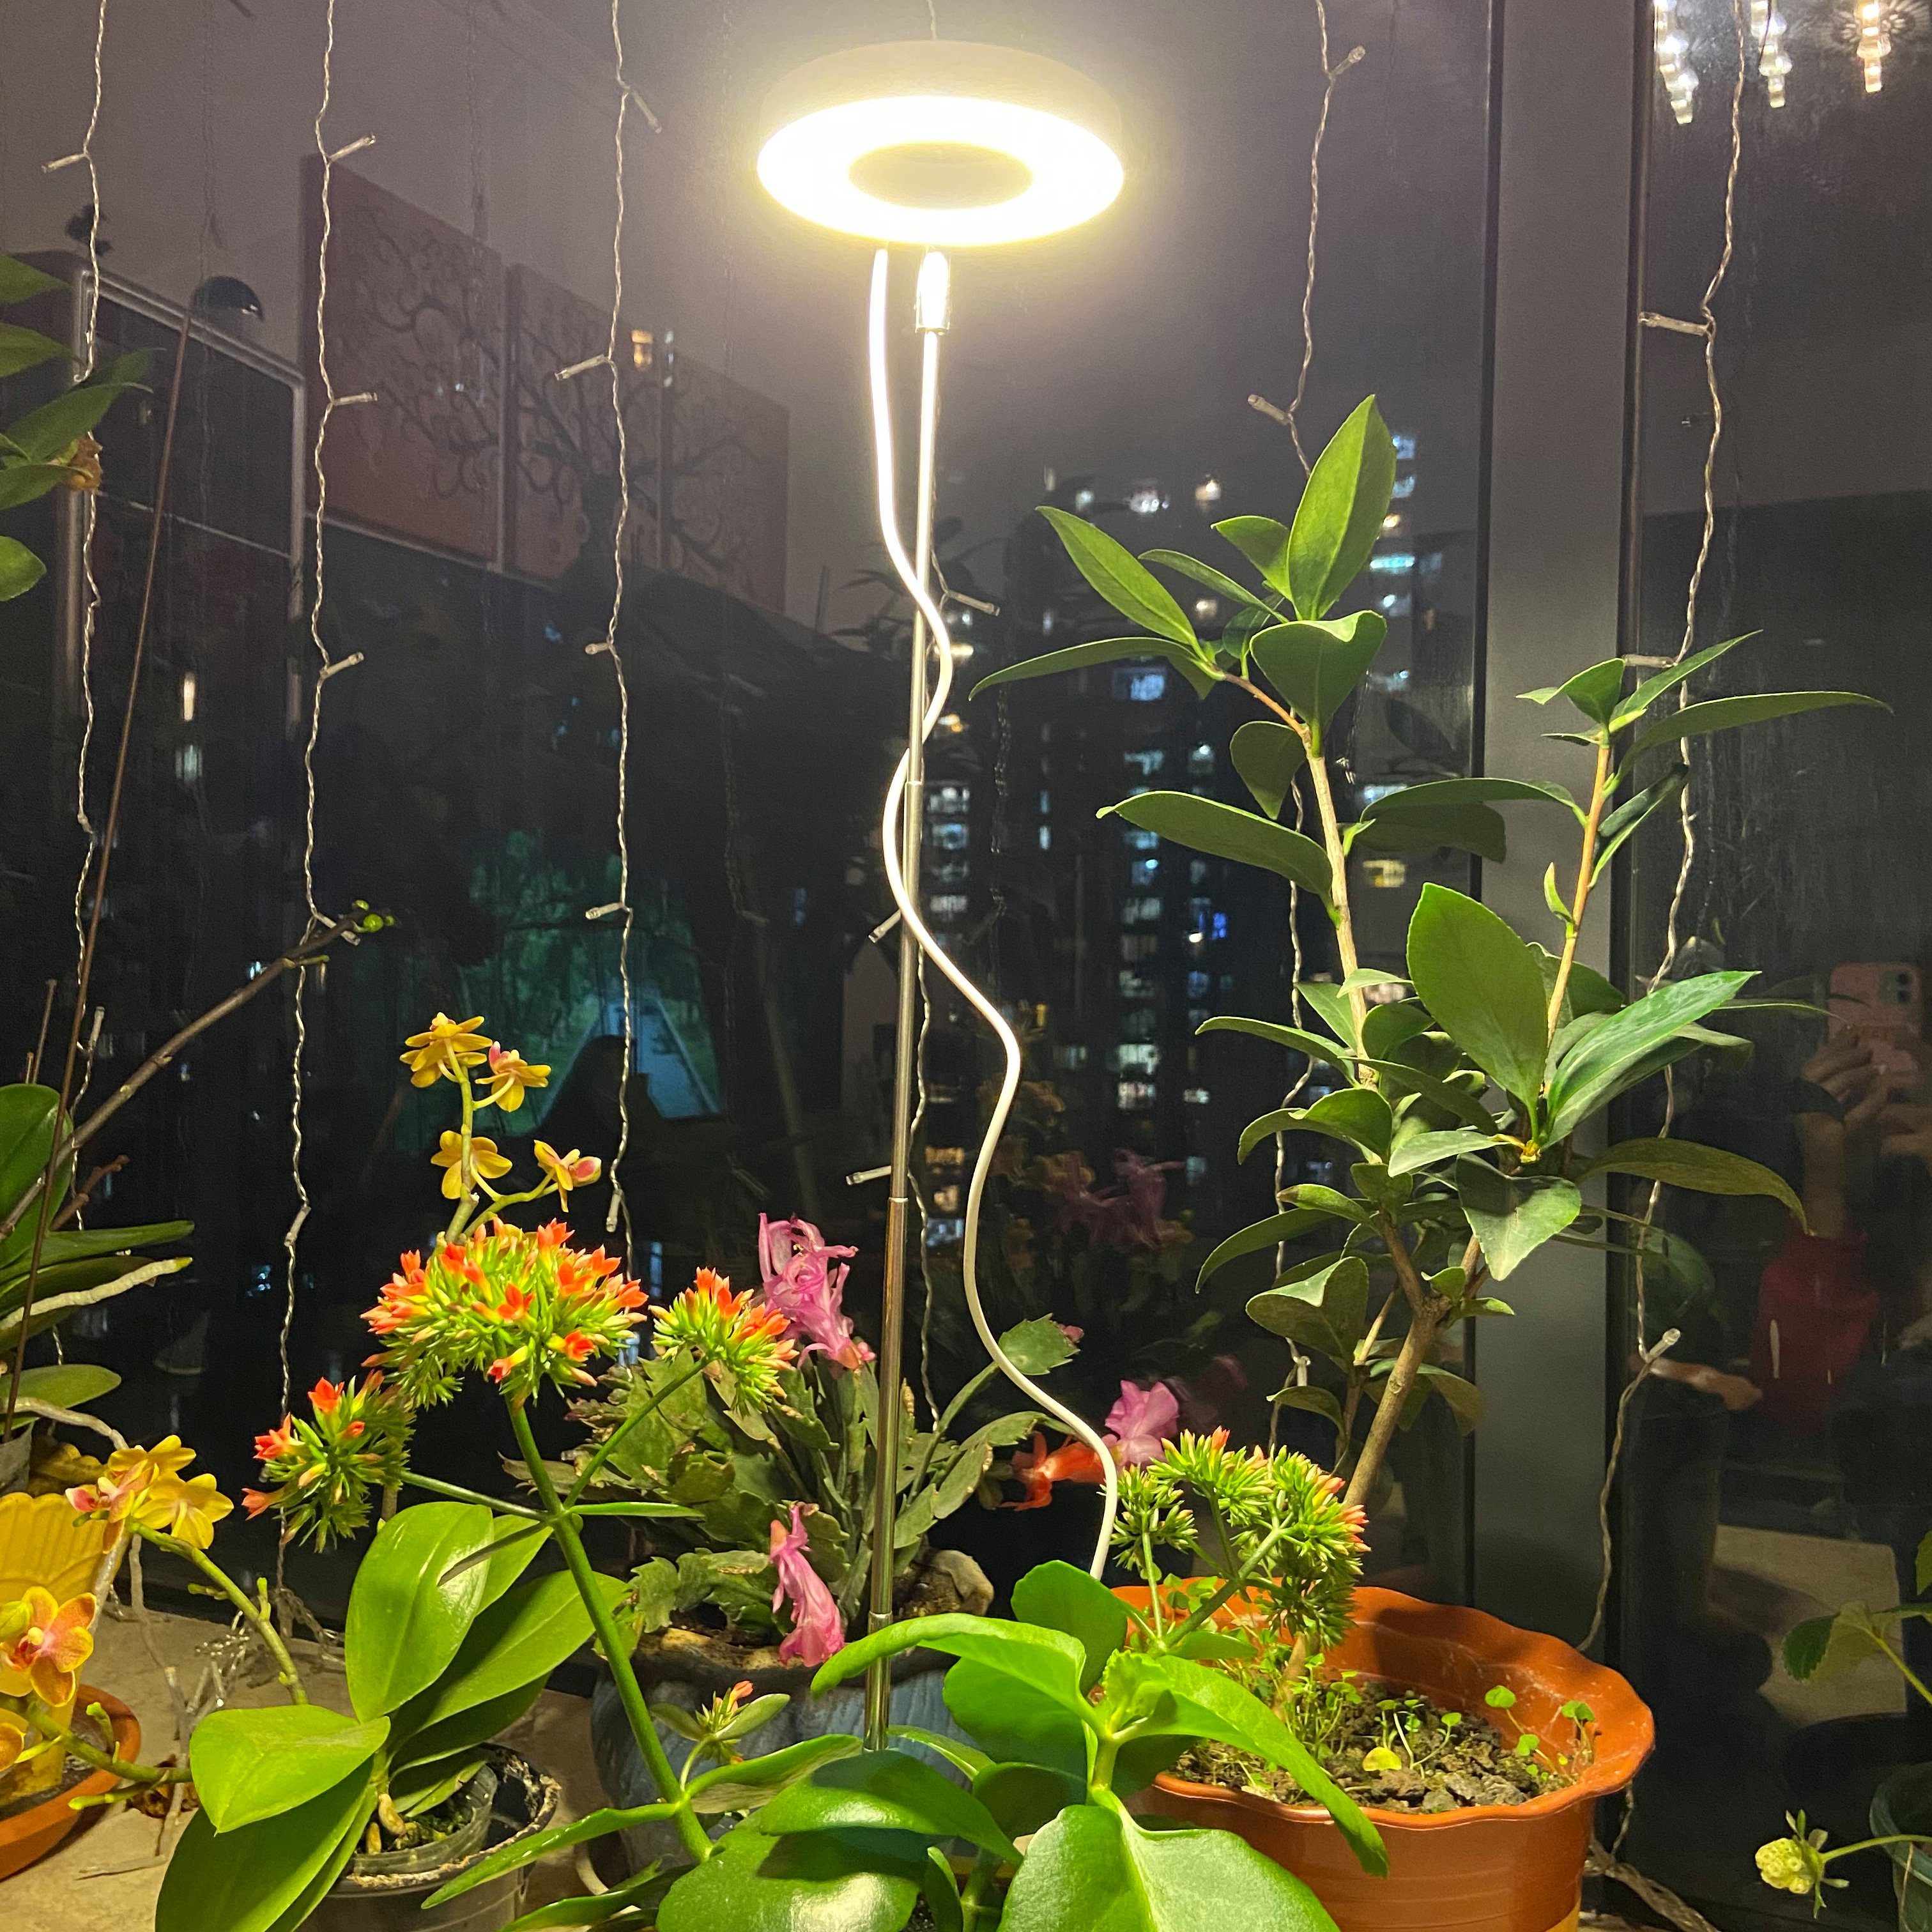 Sonnenlicht, Rosnek einstellbar Vollspektrum, für Zimmerpflanzen, Höhe Halogen, Timer, hohe Pflanzenlampe Helligkeit, Sonnenlicht/USB dimmbar,